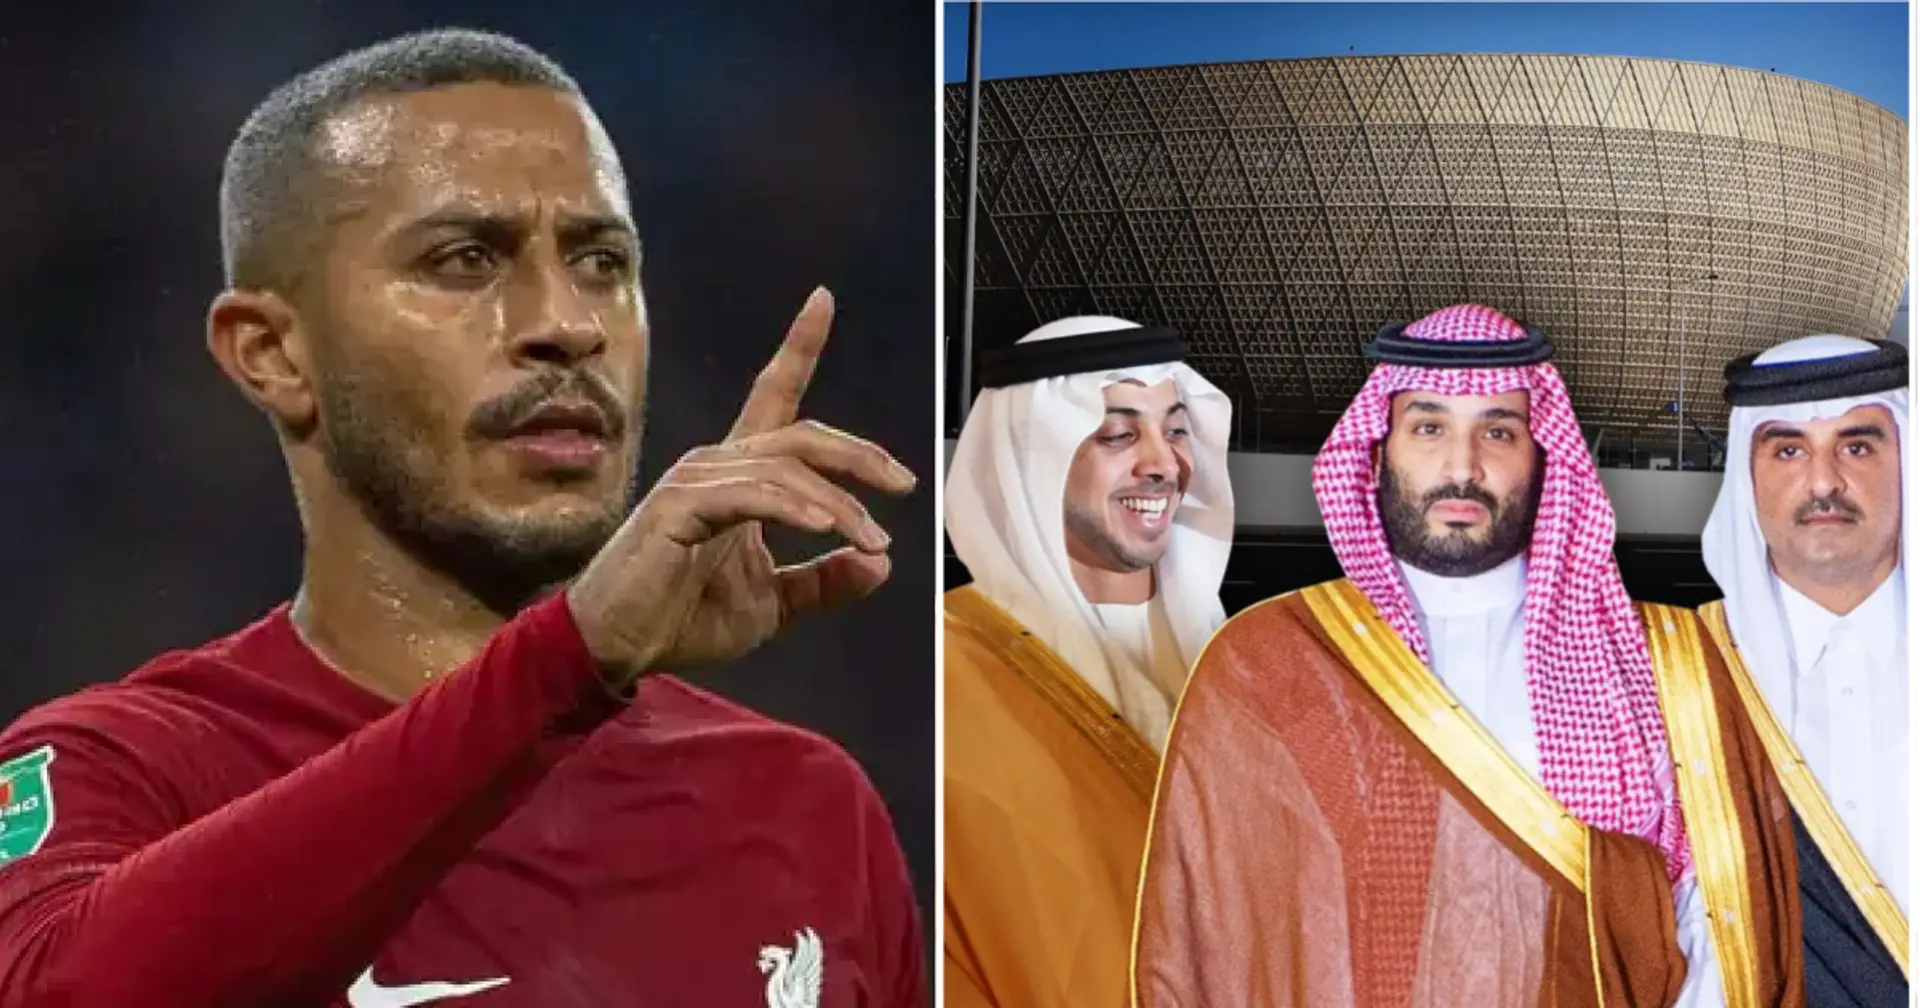 Liverpool könnte Thiago nach dem Interesse aus Saudi-Arabien gehen lassen